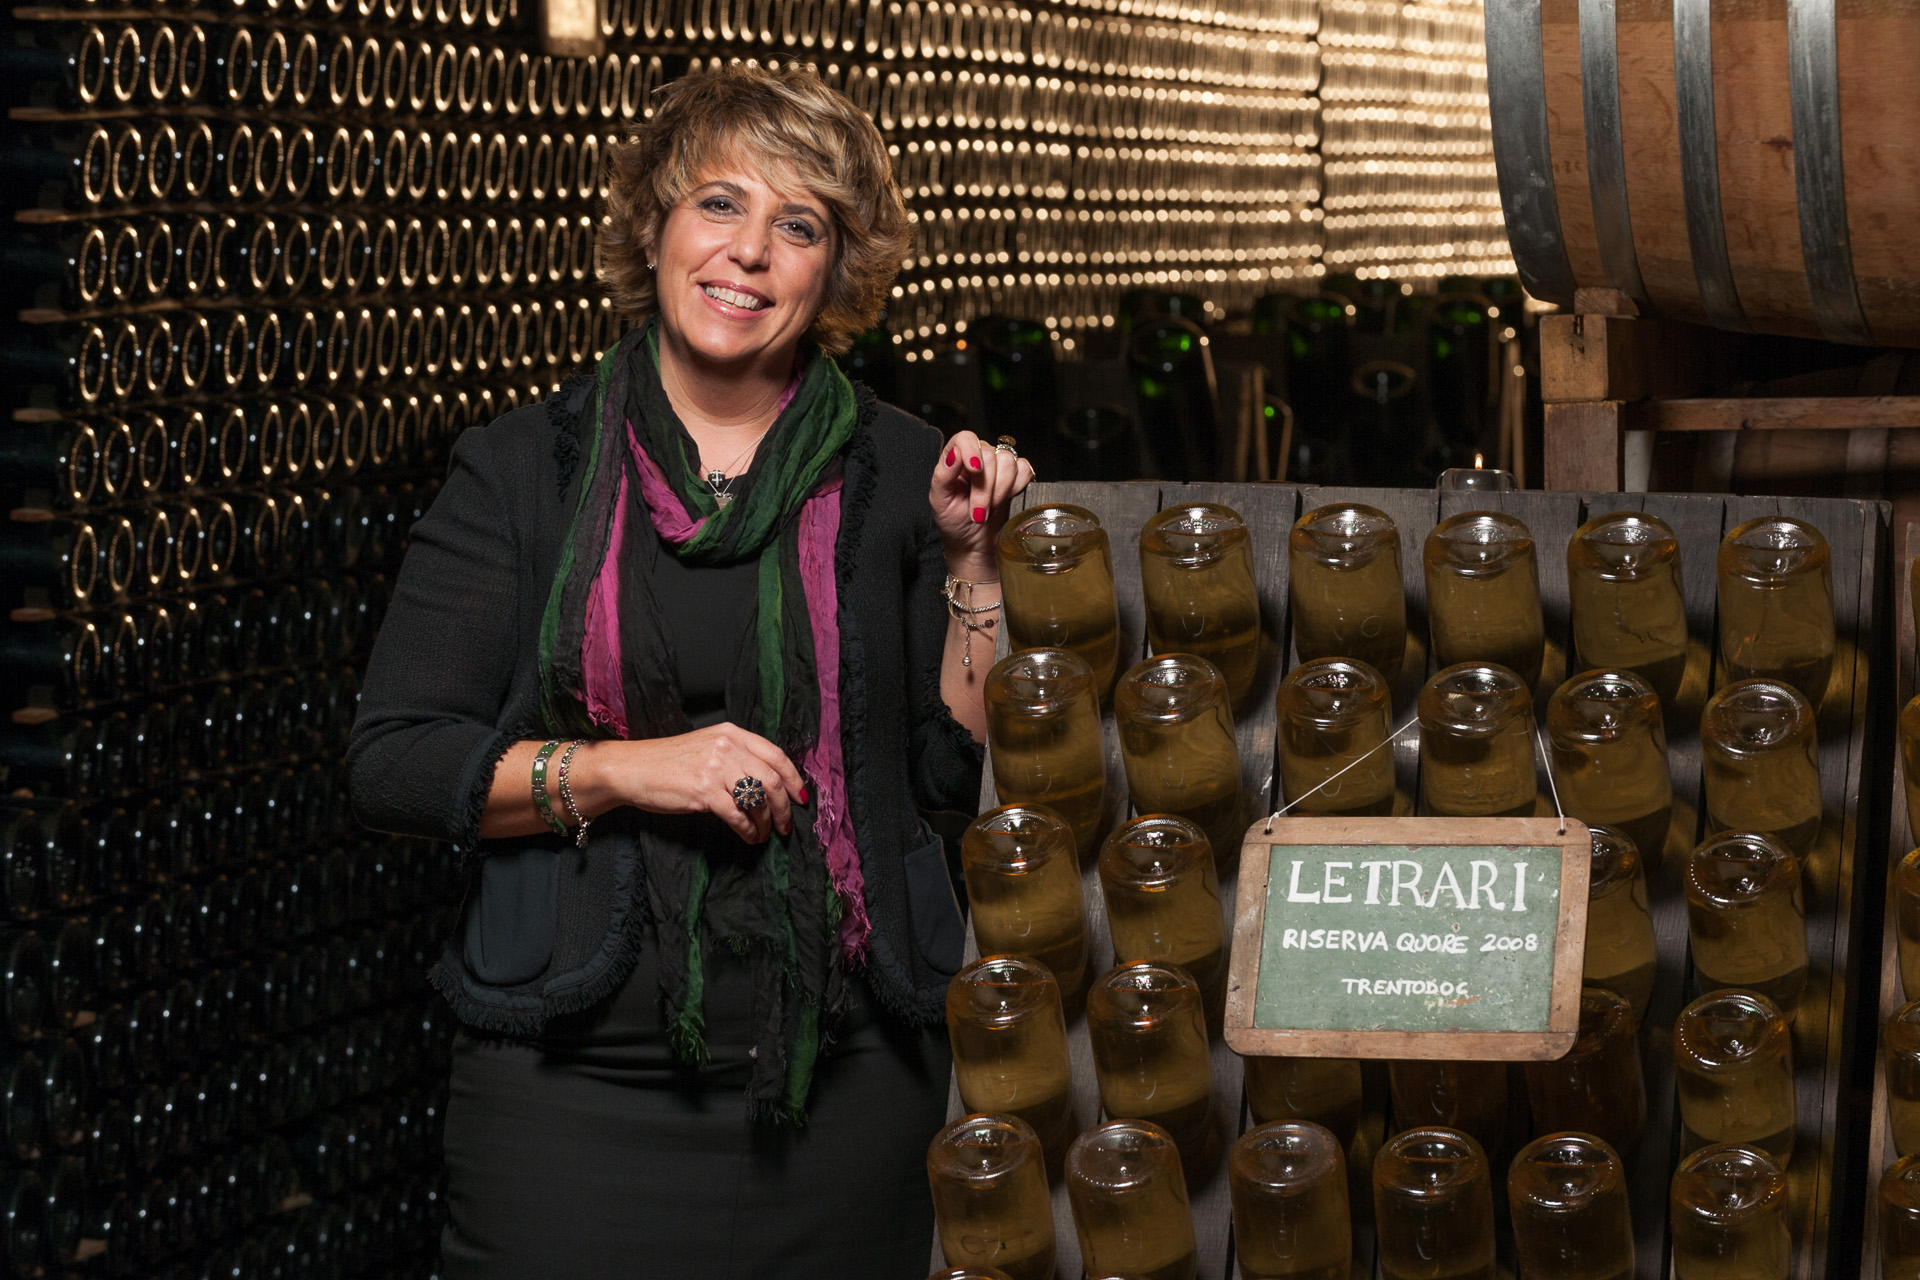 Lucia Letrari, imprenditrice, enologa, amica e donna del vino del trentino, foto originale dall'azienda